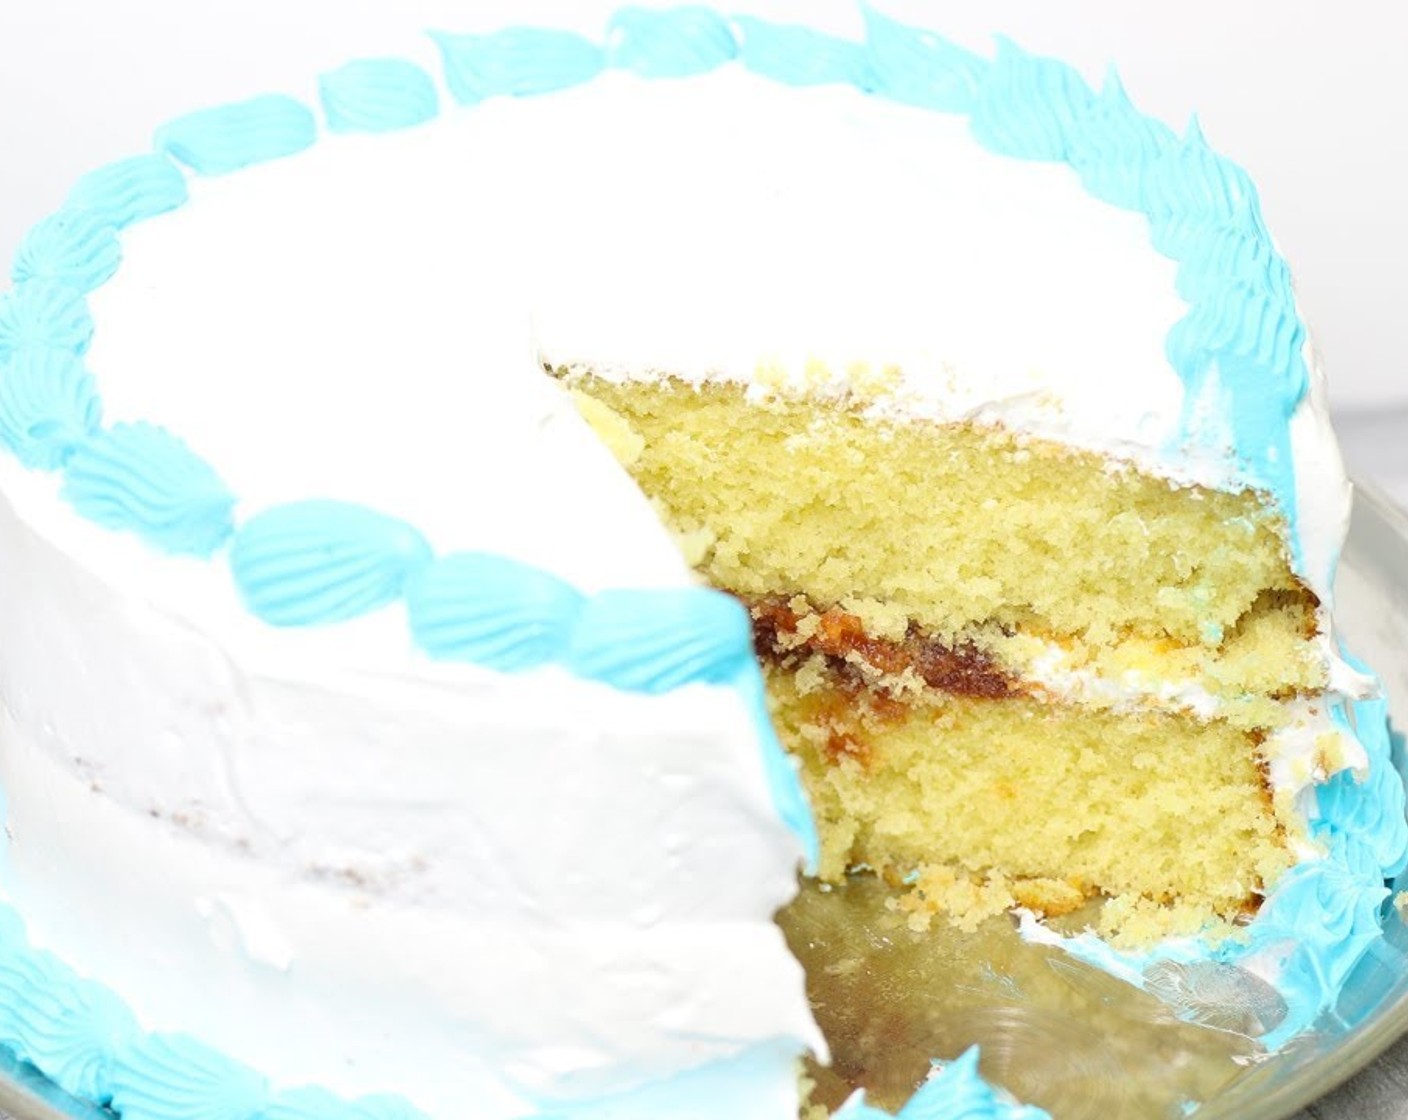 Bizcocho Dominicano (Dominican Cake)